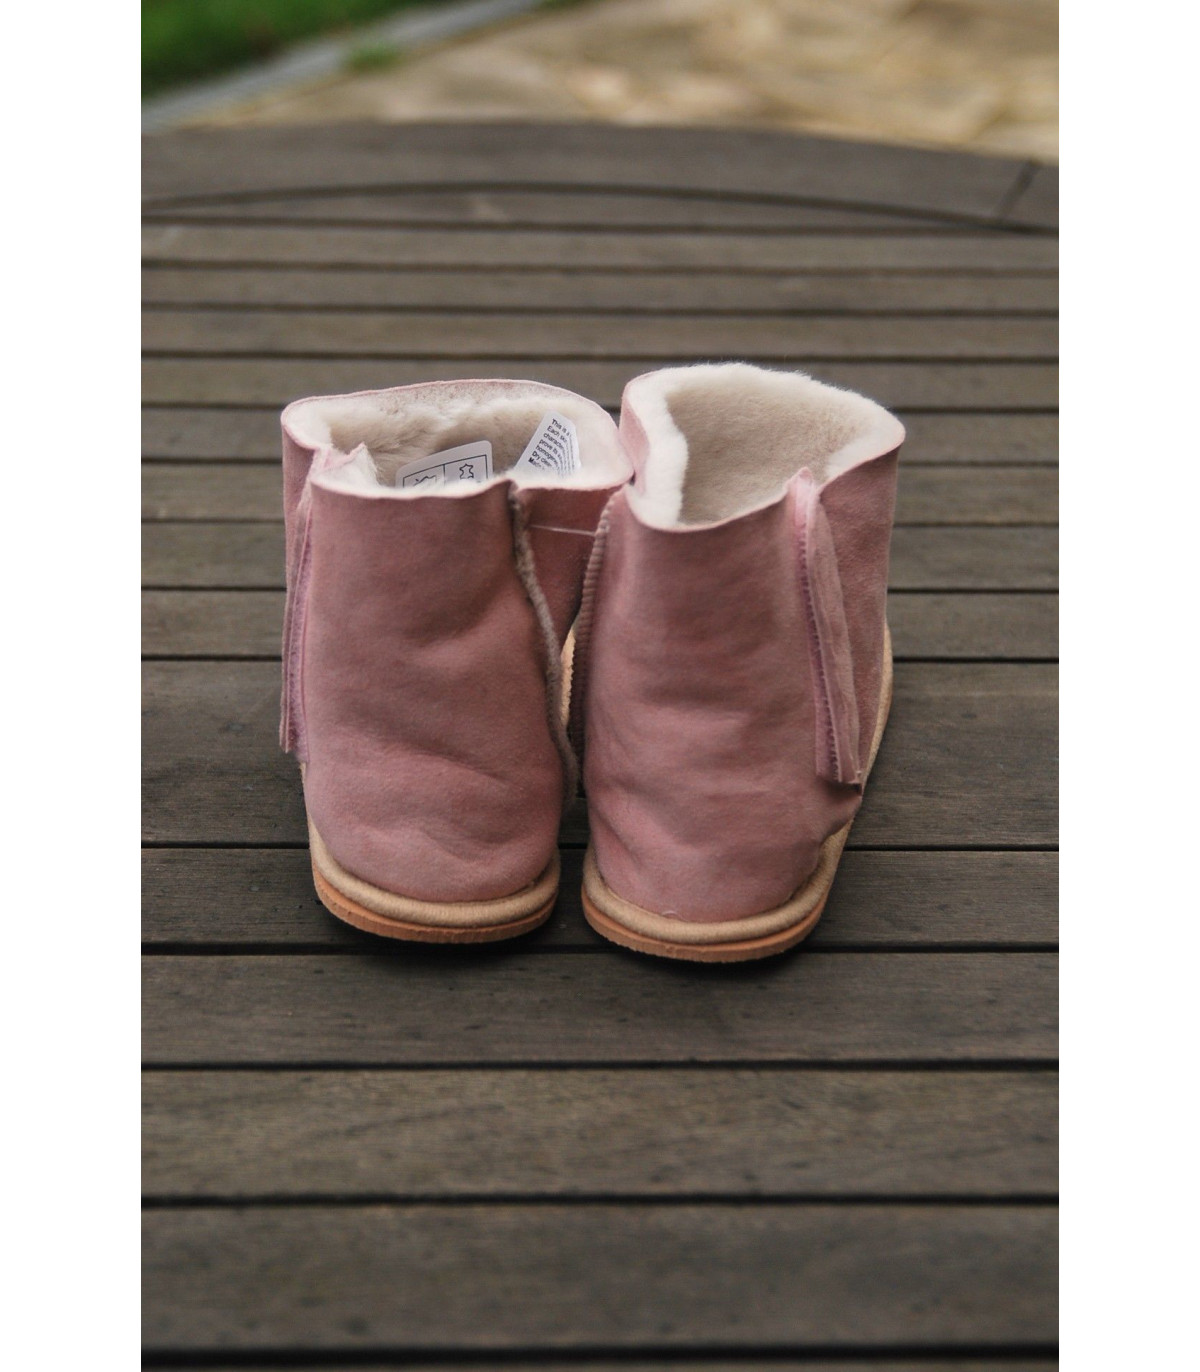 DX-Exclusive Wear Chaussons en peau d/'agneau pour bébé chaussons bébé ADB-0001 pour fille garçon fermeture velcro bottes fourrure véritable cuir